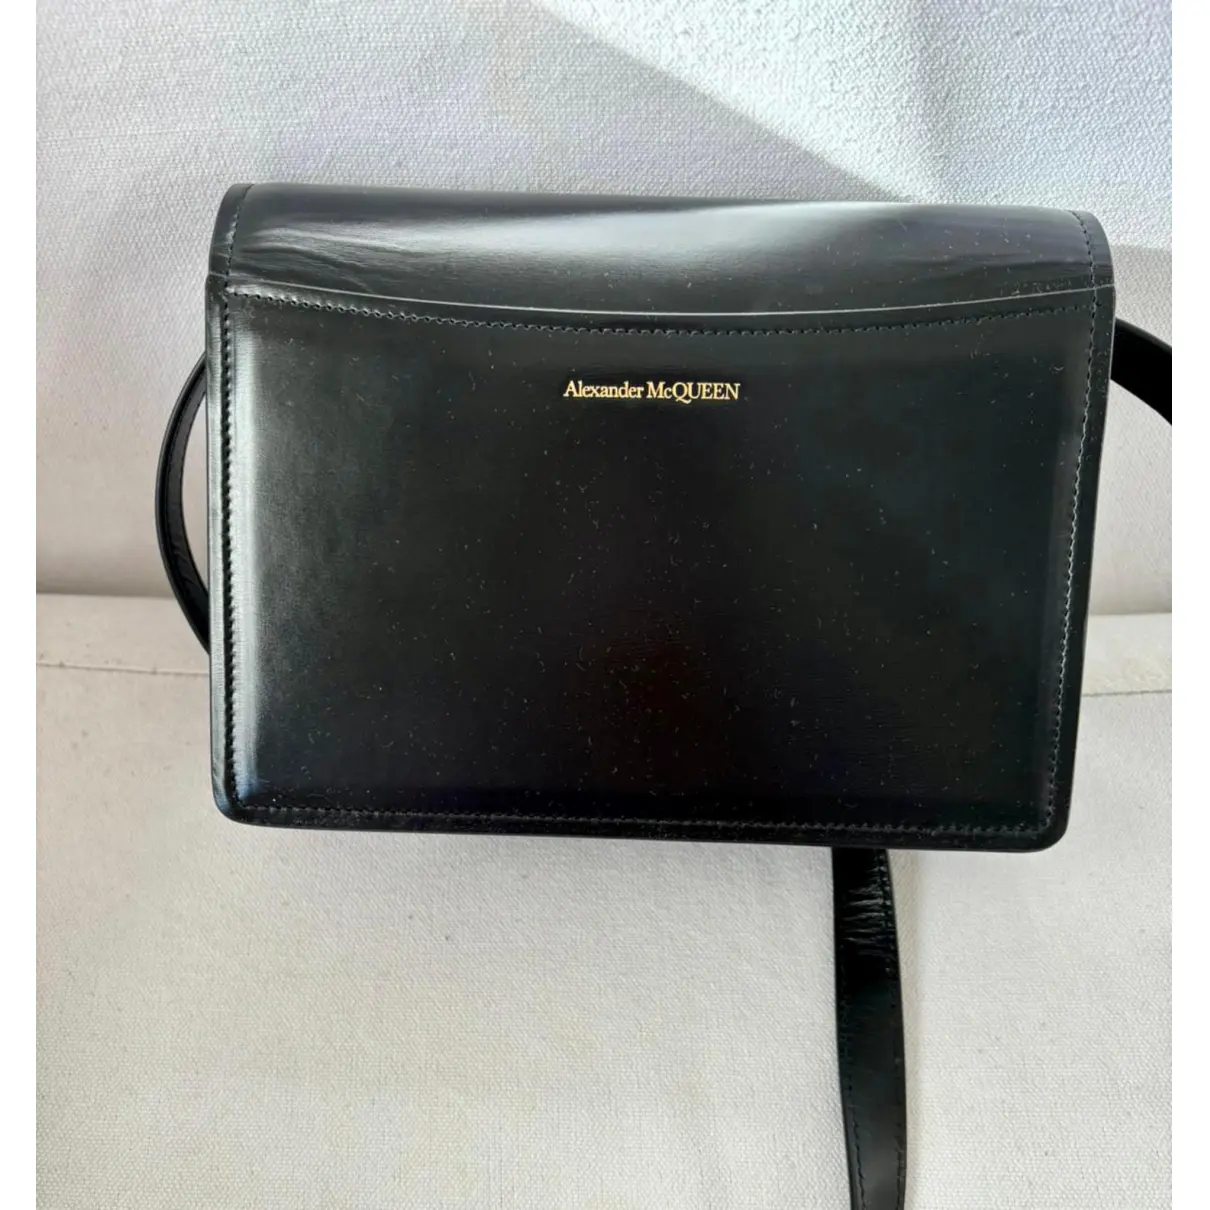 Knuckle leather handbag Alexander McQueen